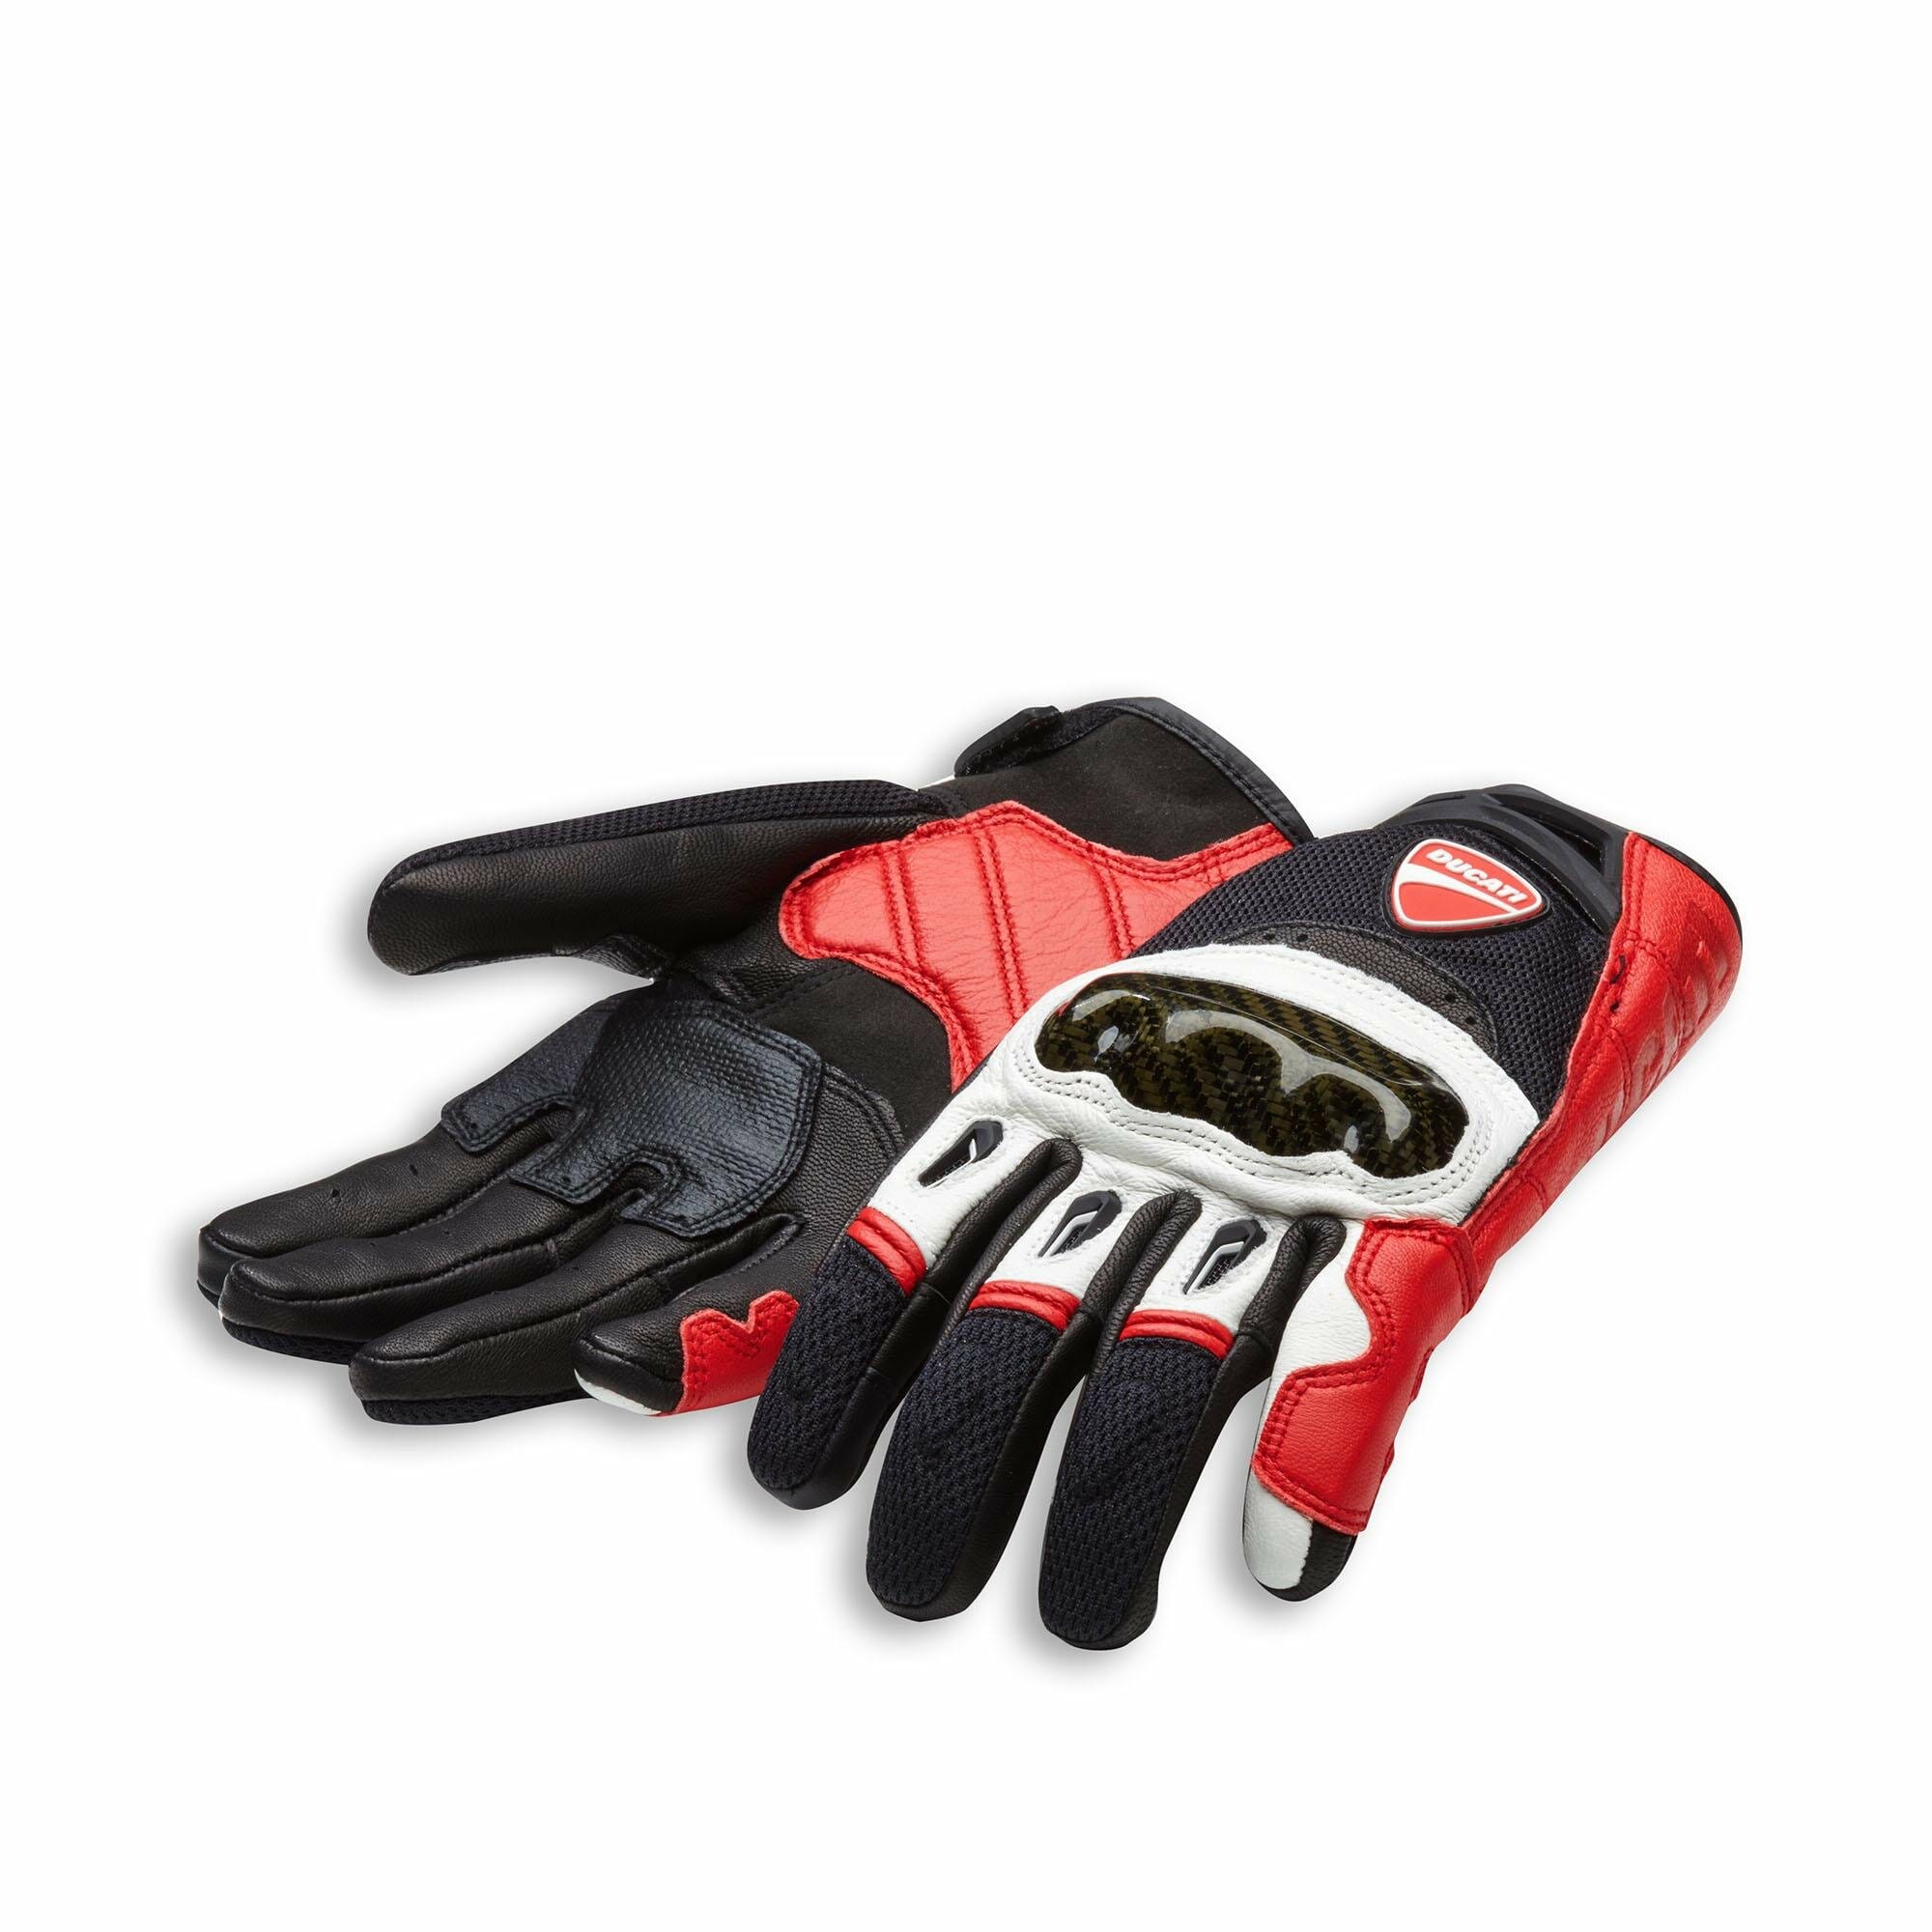 Company C1 Gloves